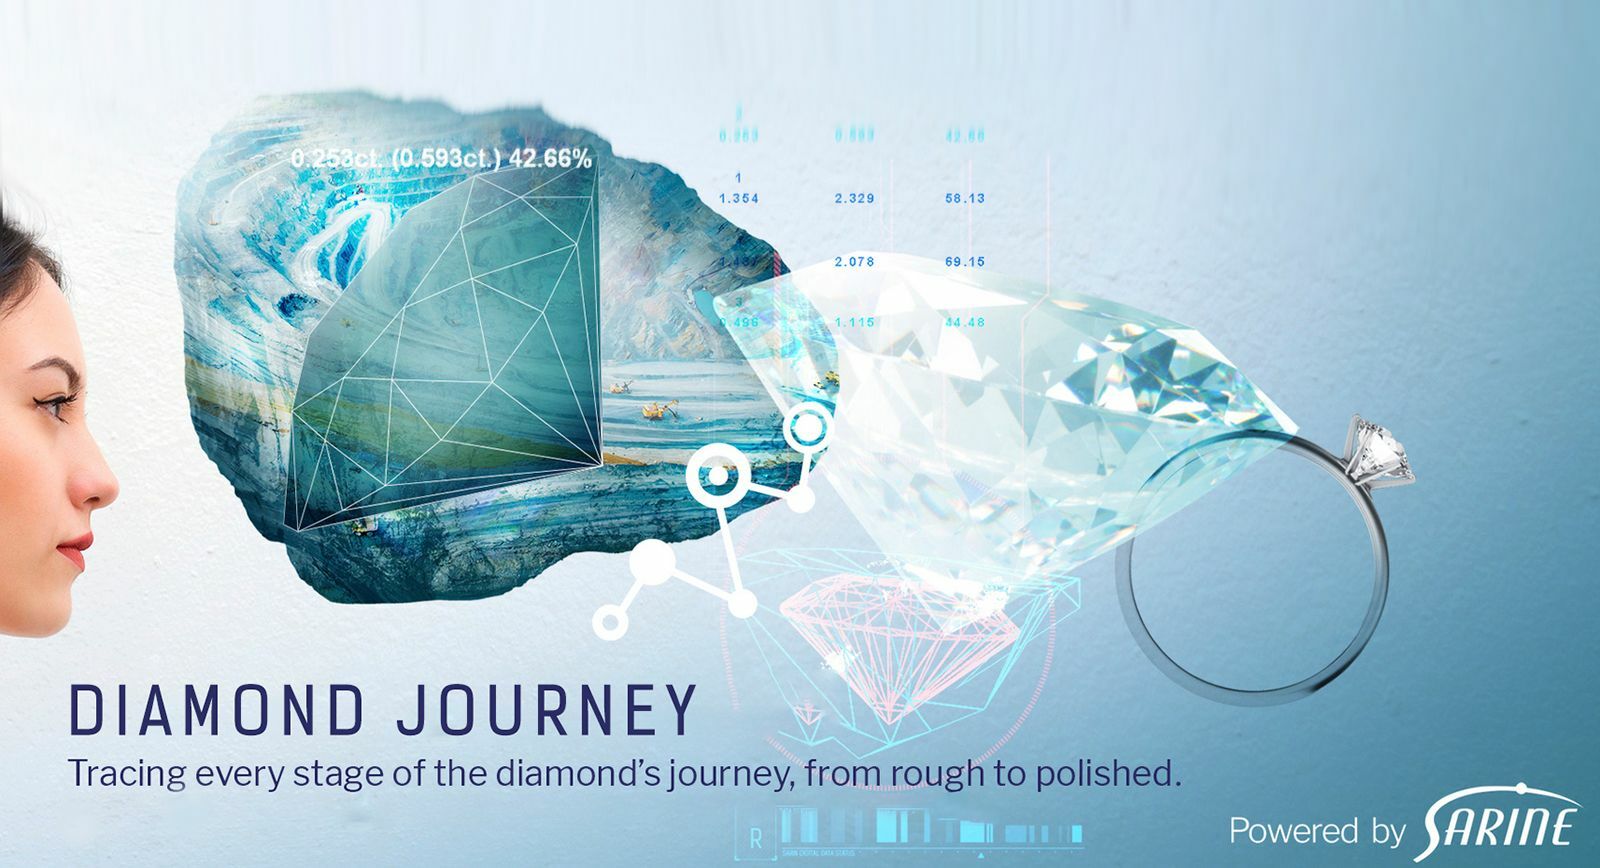 Sarine Diamond Journey - поиск алмазов от рудника до рынка